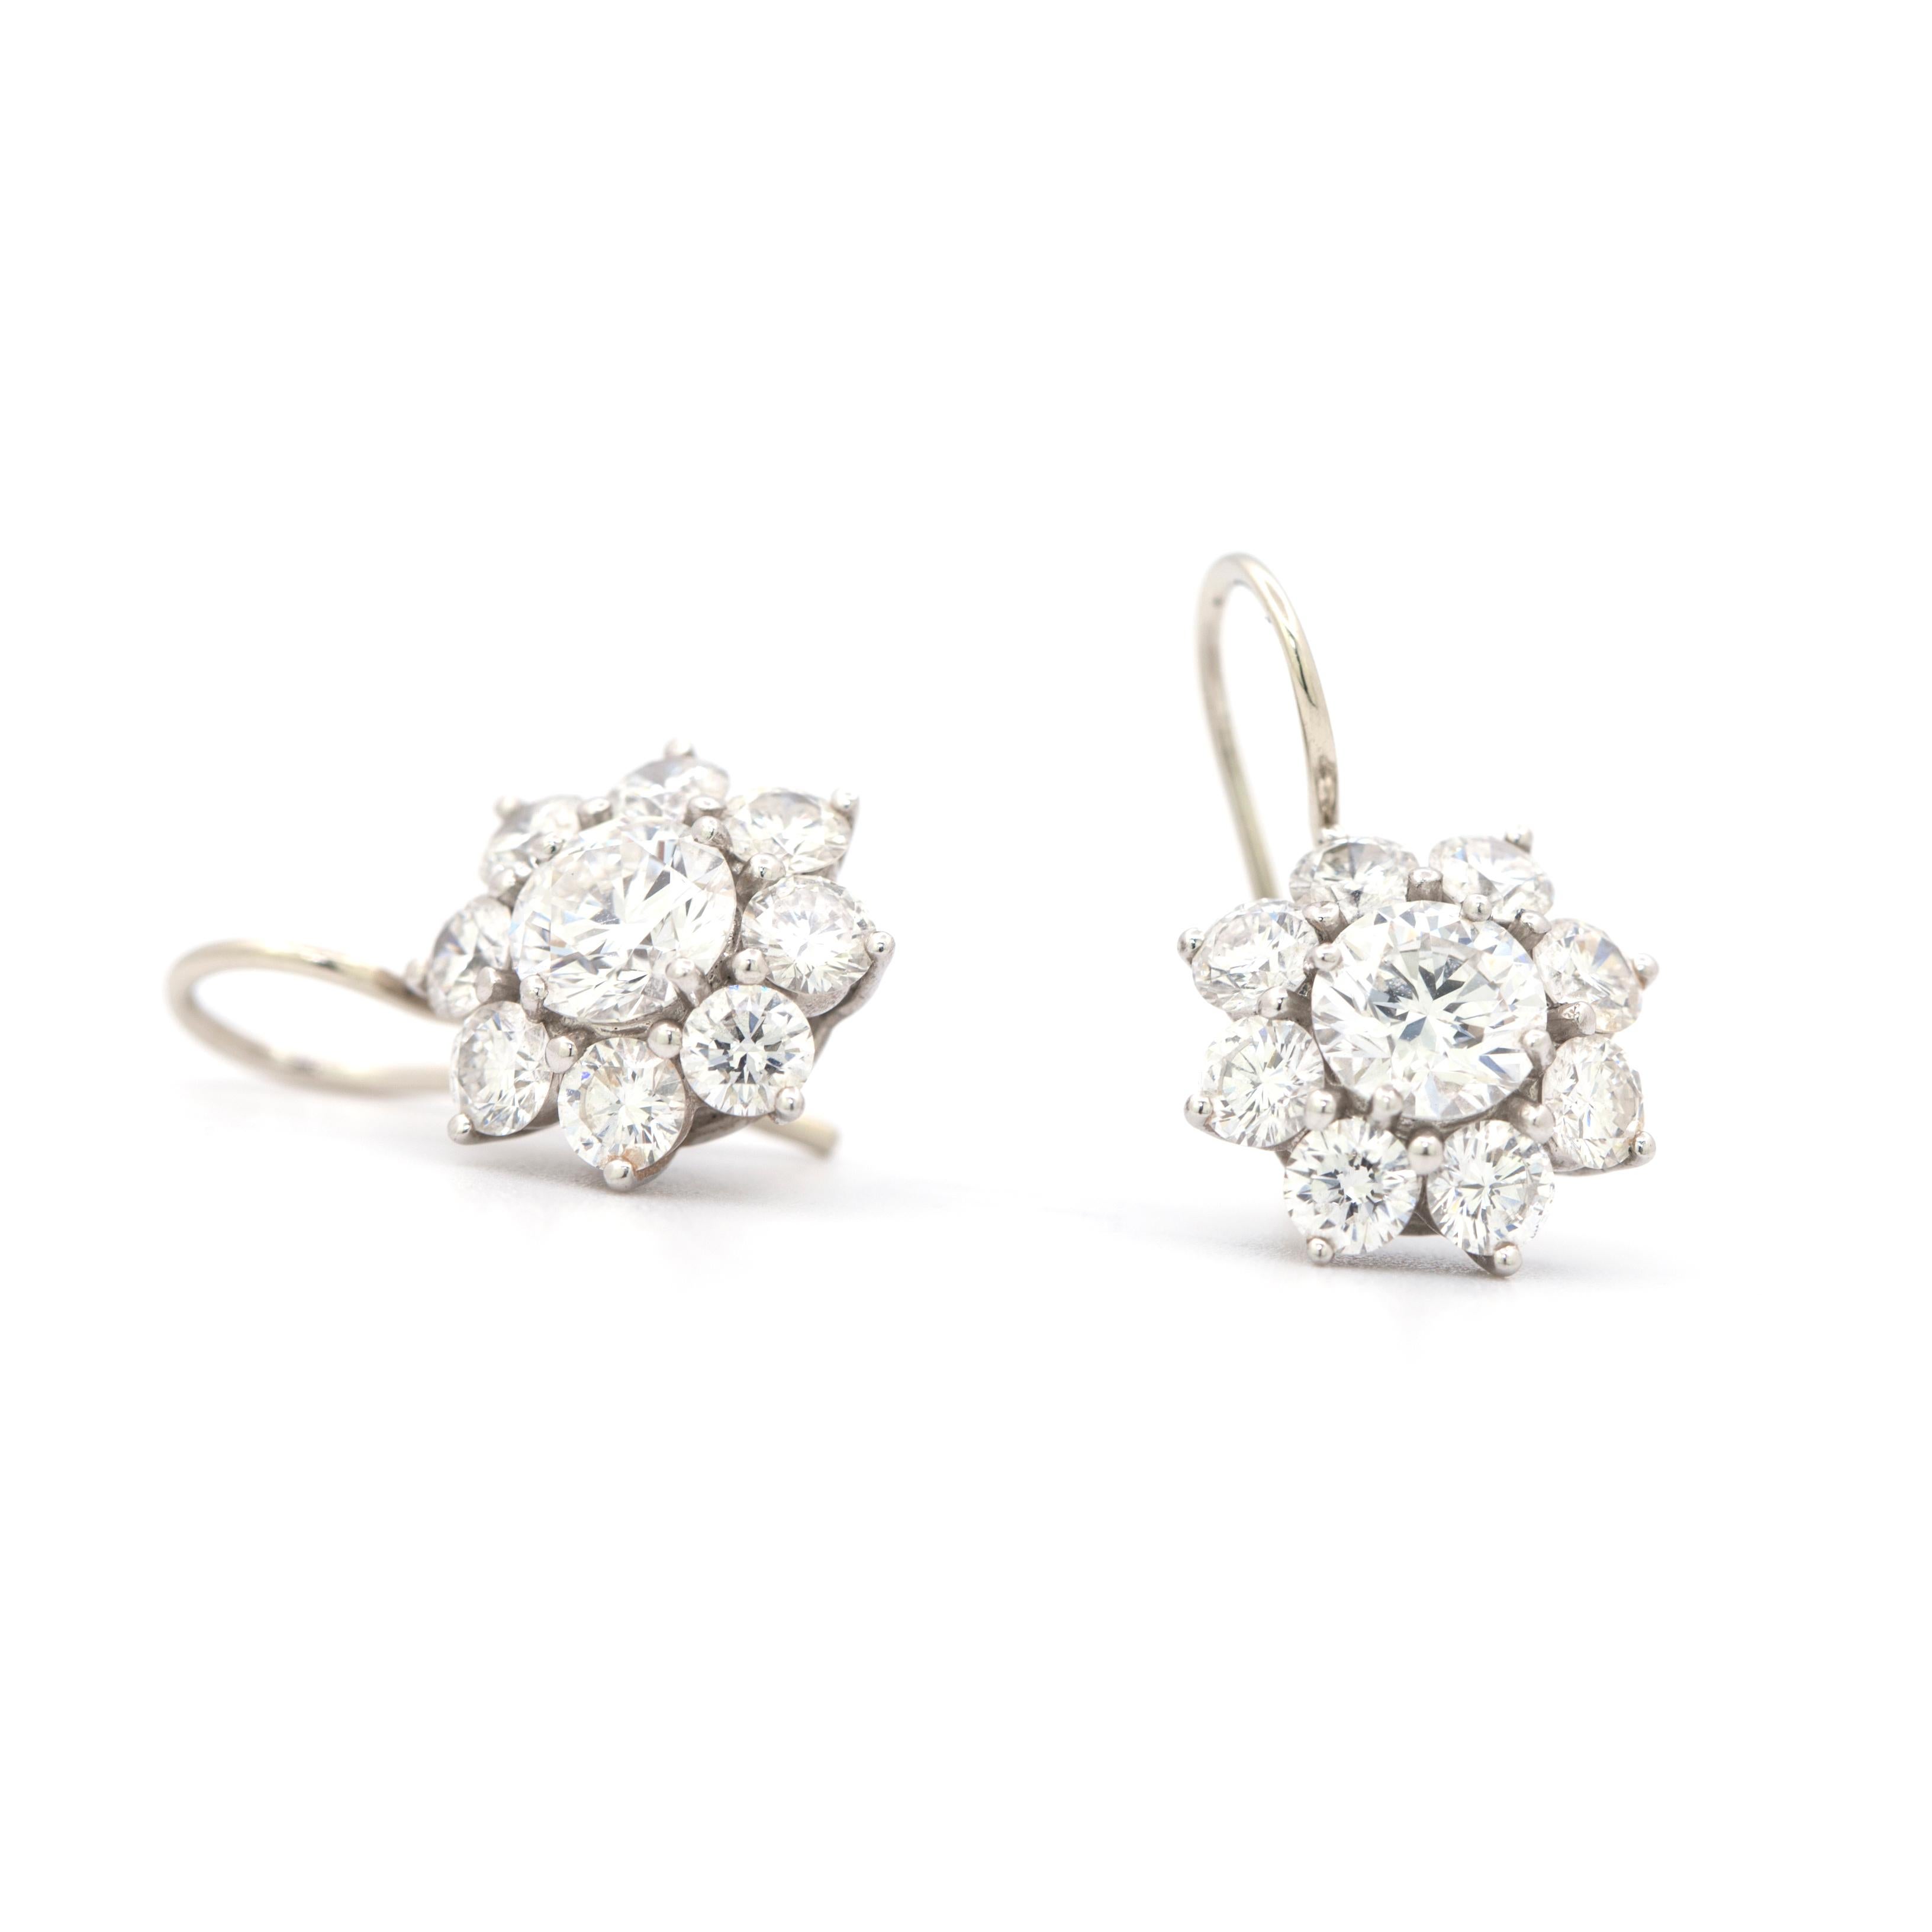 harry winston diamond earrings price